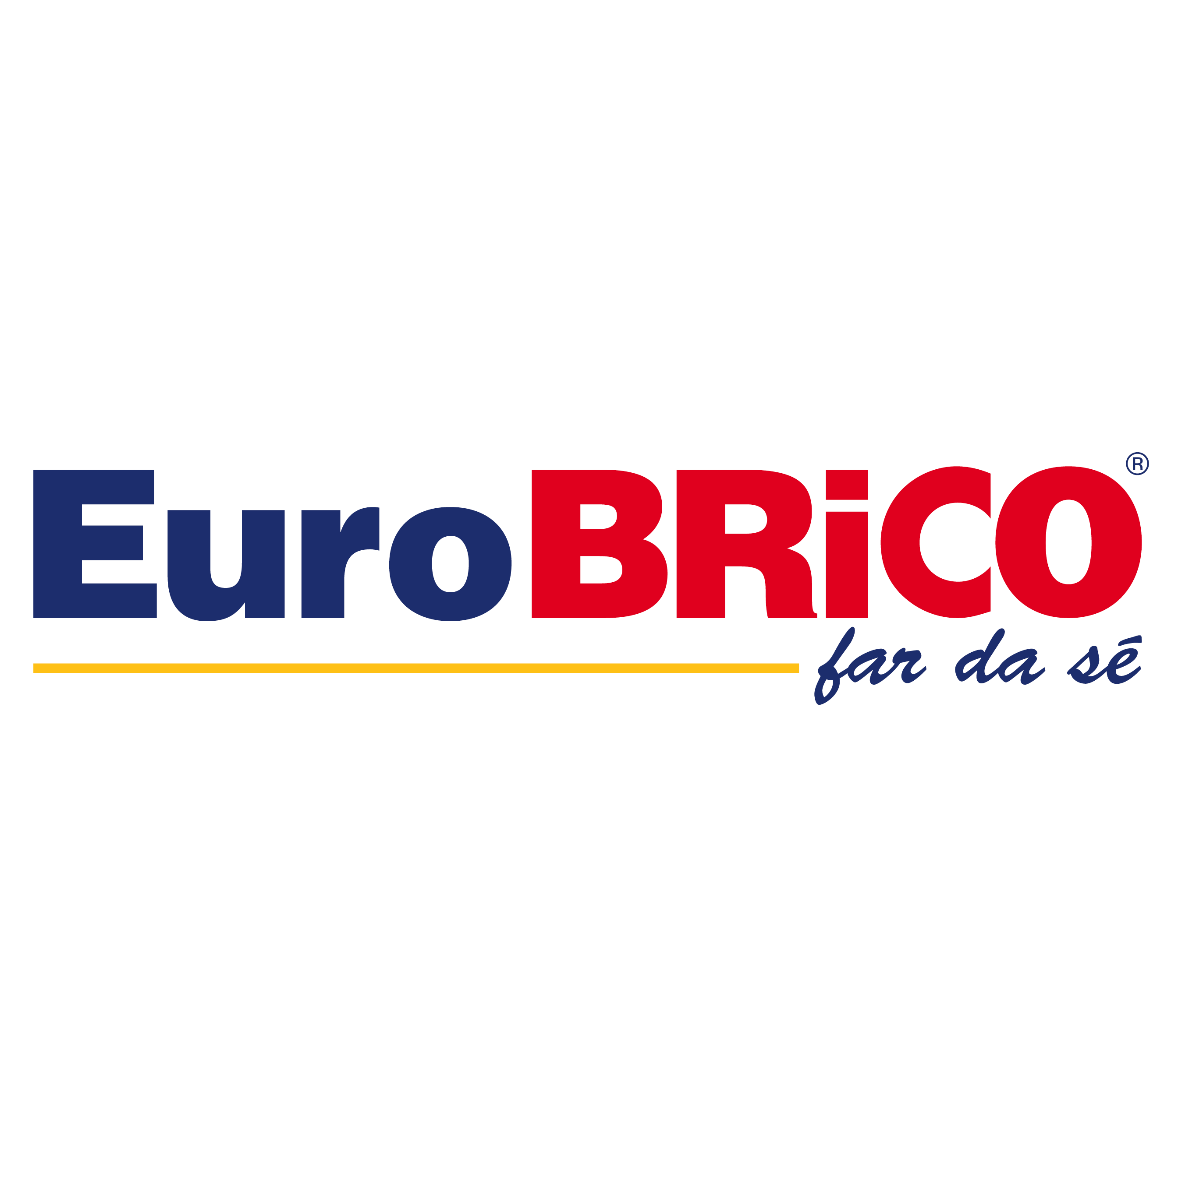 Eurobrico: secondo miglior e-commerce d'Italia!